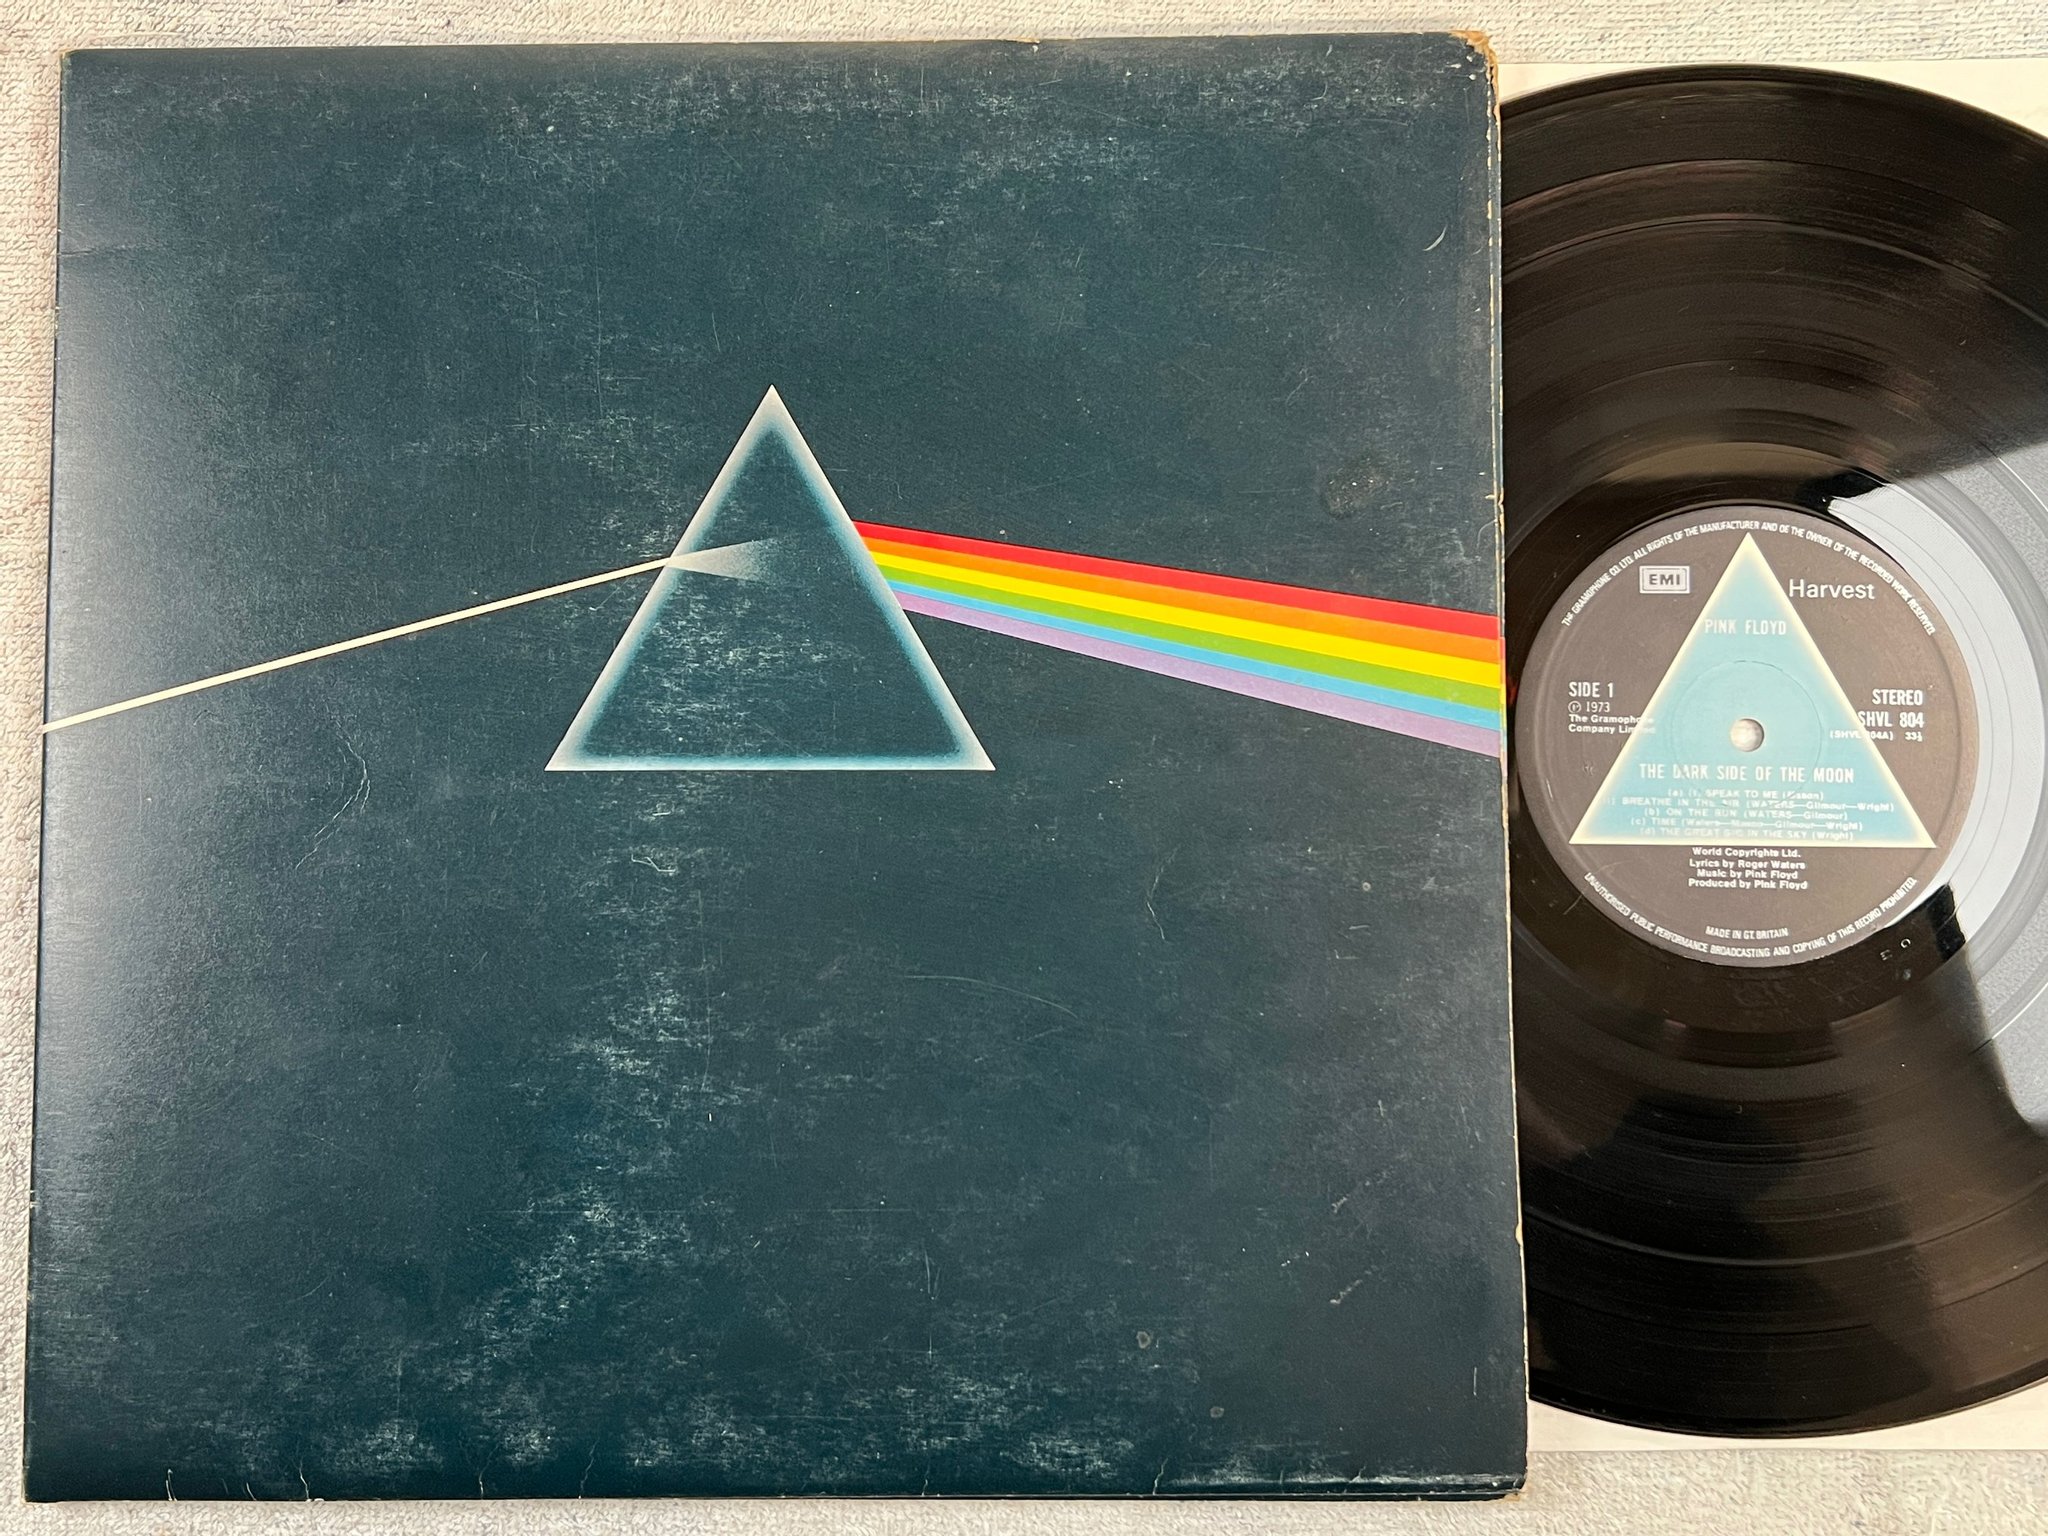 Omslagsbild för skivan PINK FLOYD the dark side of the moon LP -73 UK HARVEST solid triangle SHVL 804